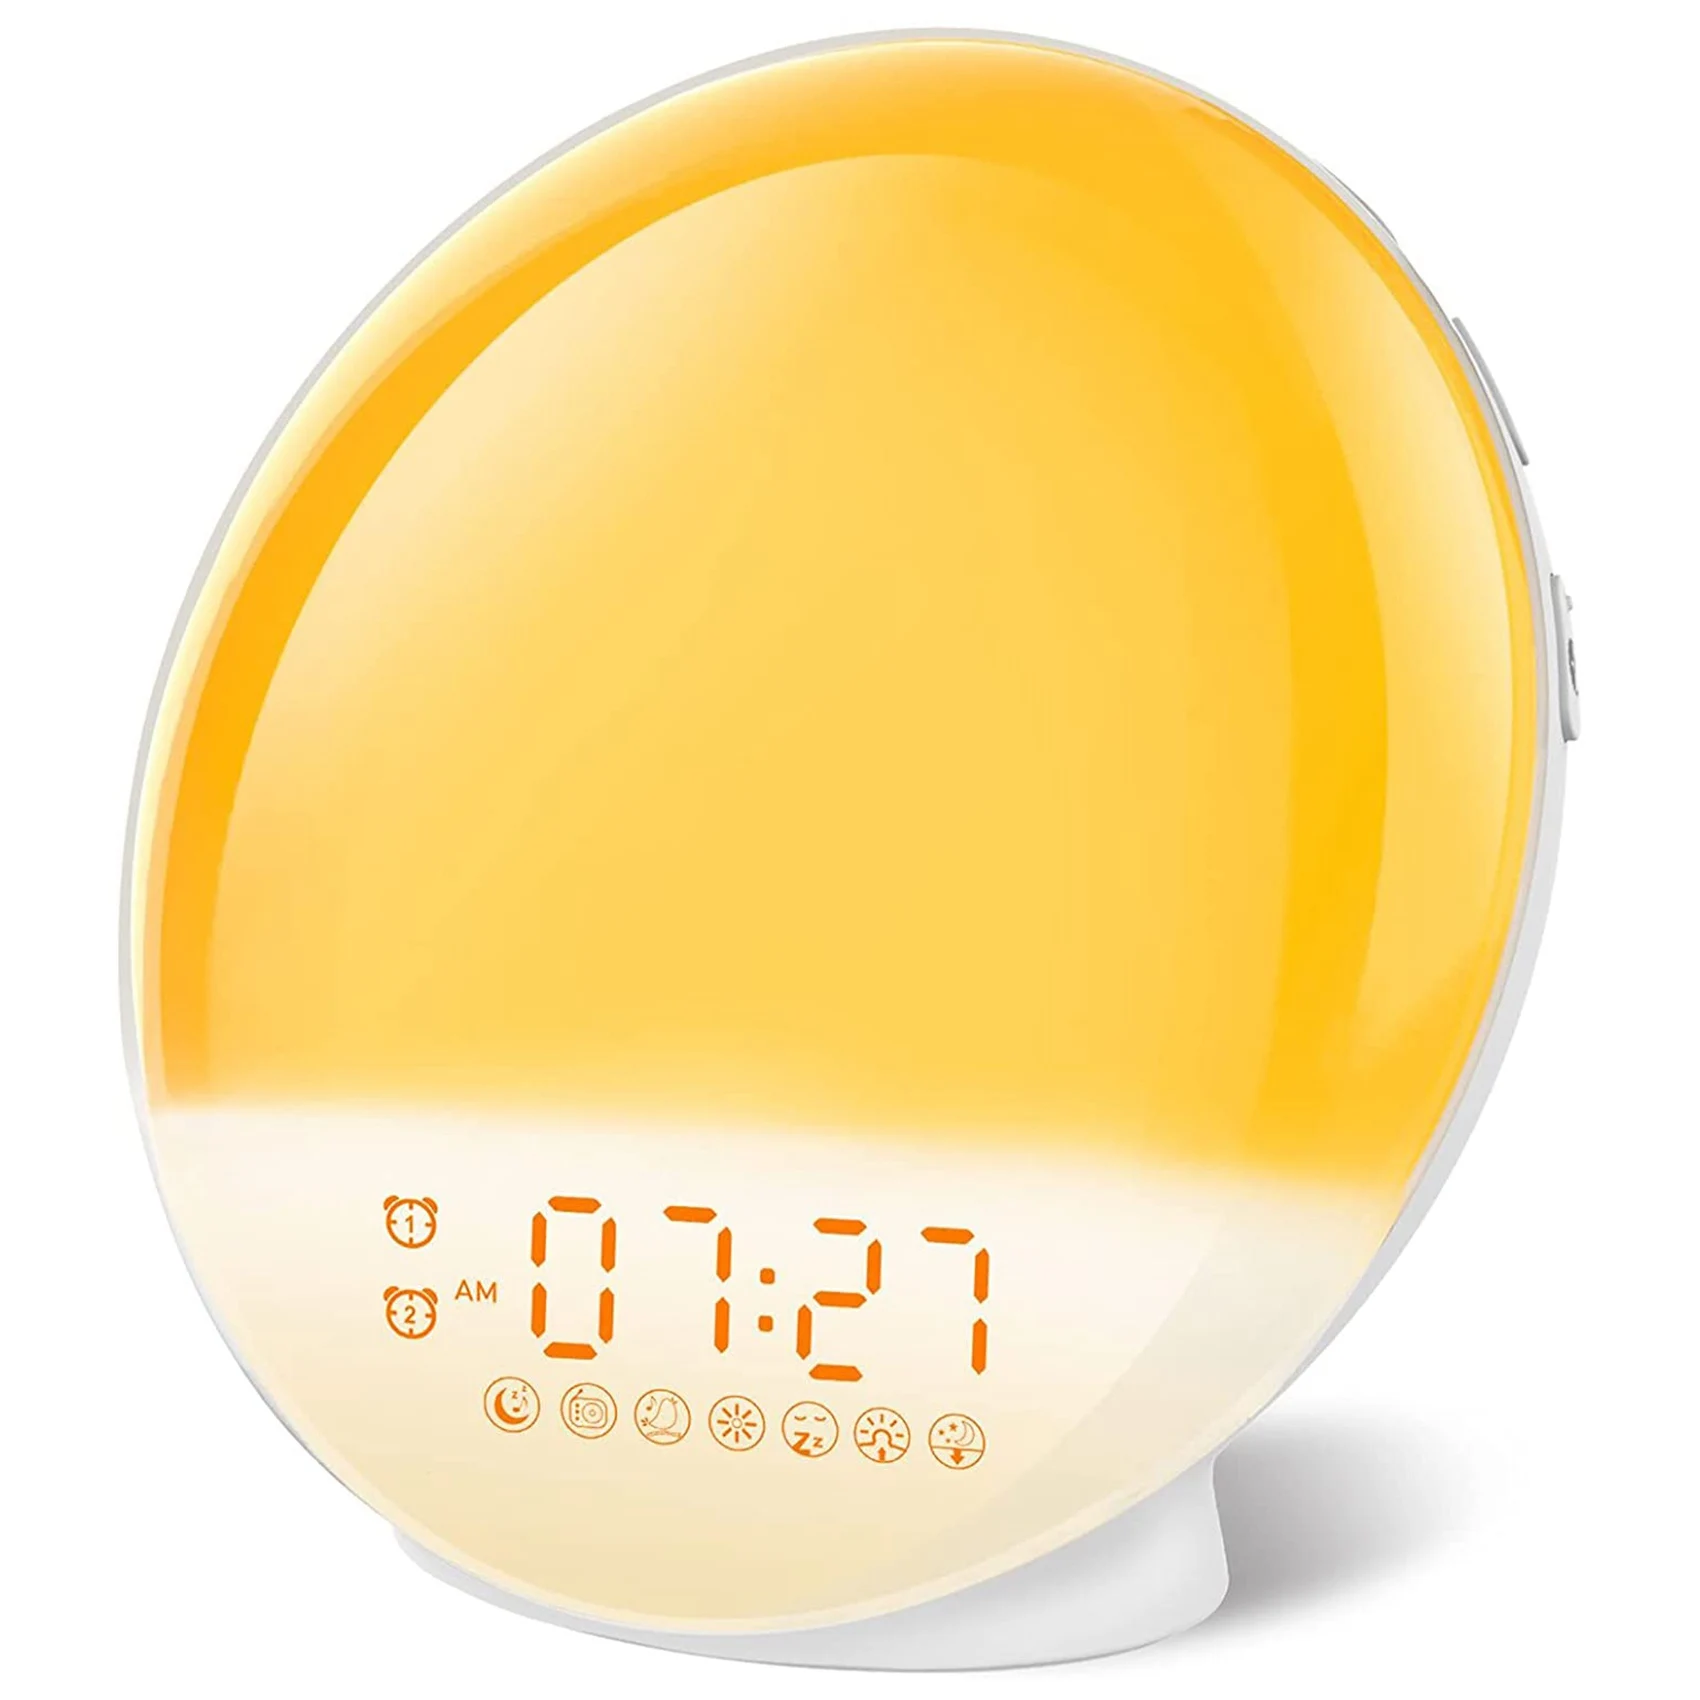 

Будильник Sunrise, аналогосветильник будильник с двумя аналоговыми часами восхода, будильник с поддержкой сна, цифровой будильник